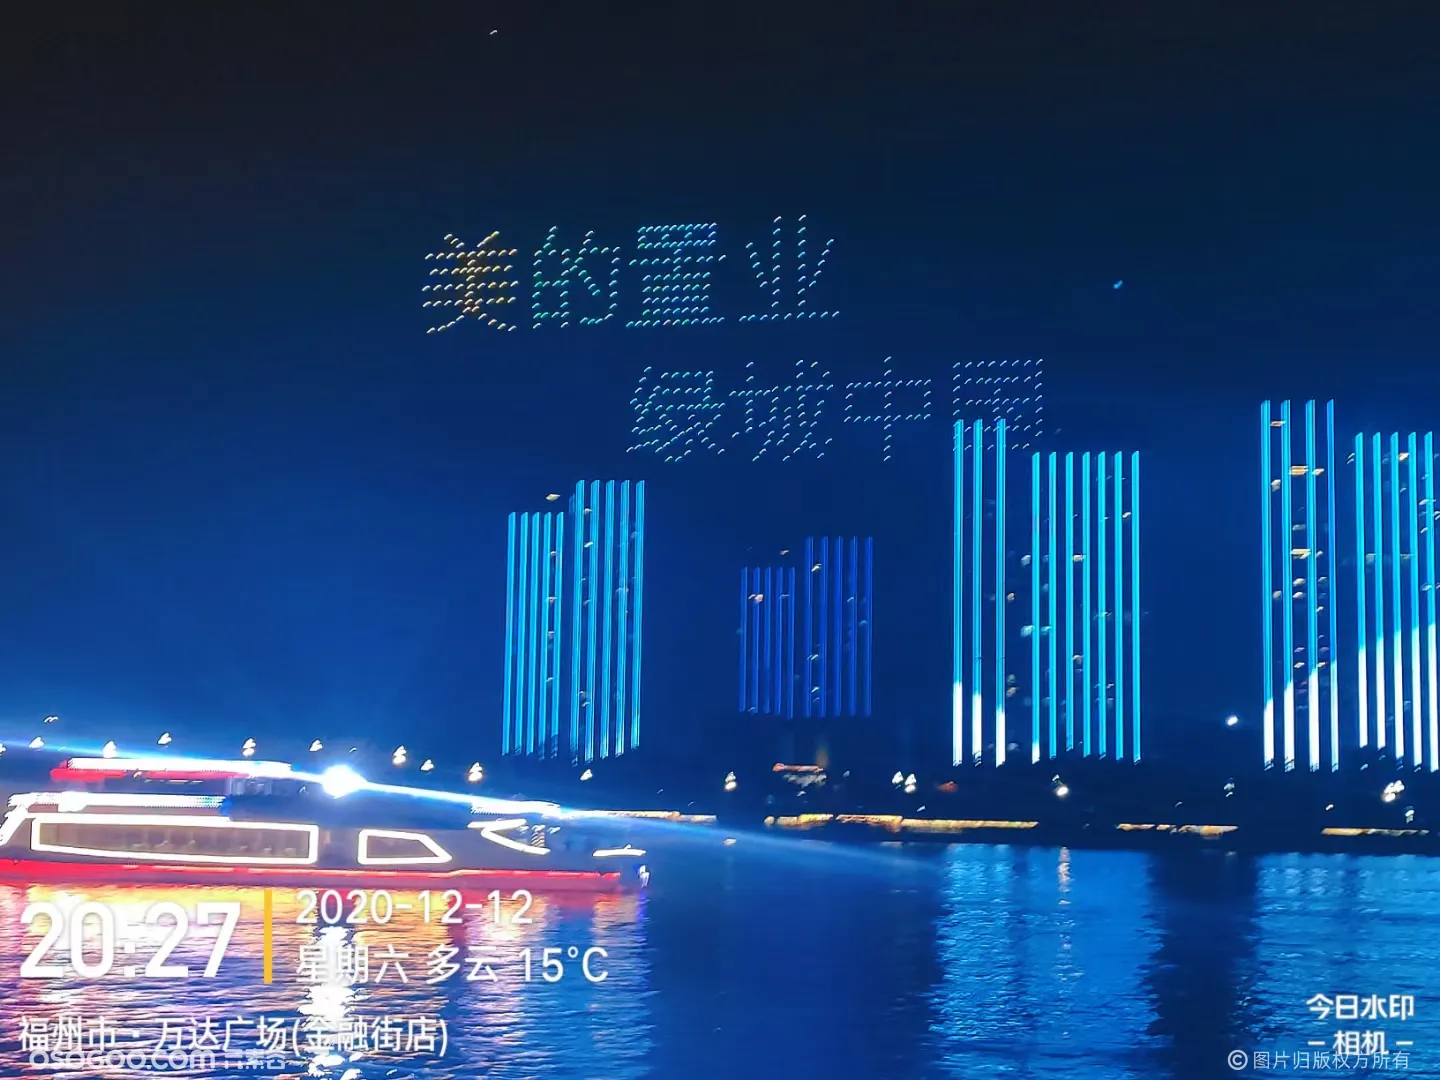 绿城美的桂语映月500台无人机点亮福州江滨